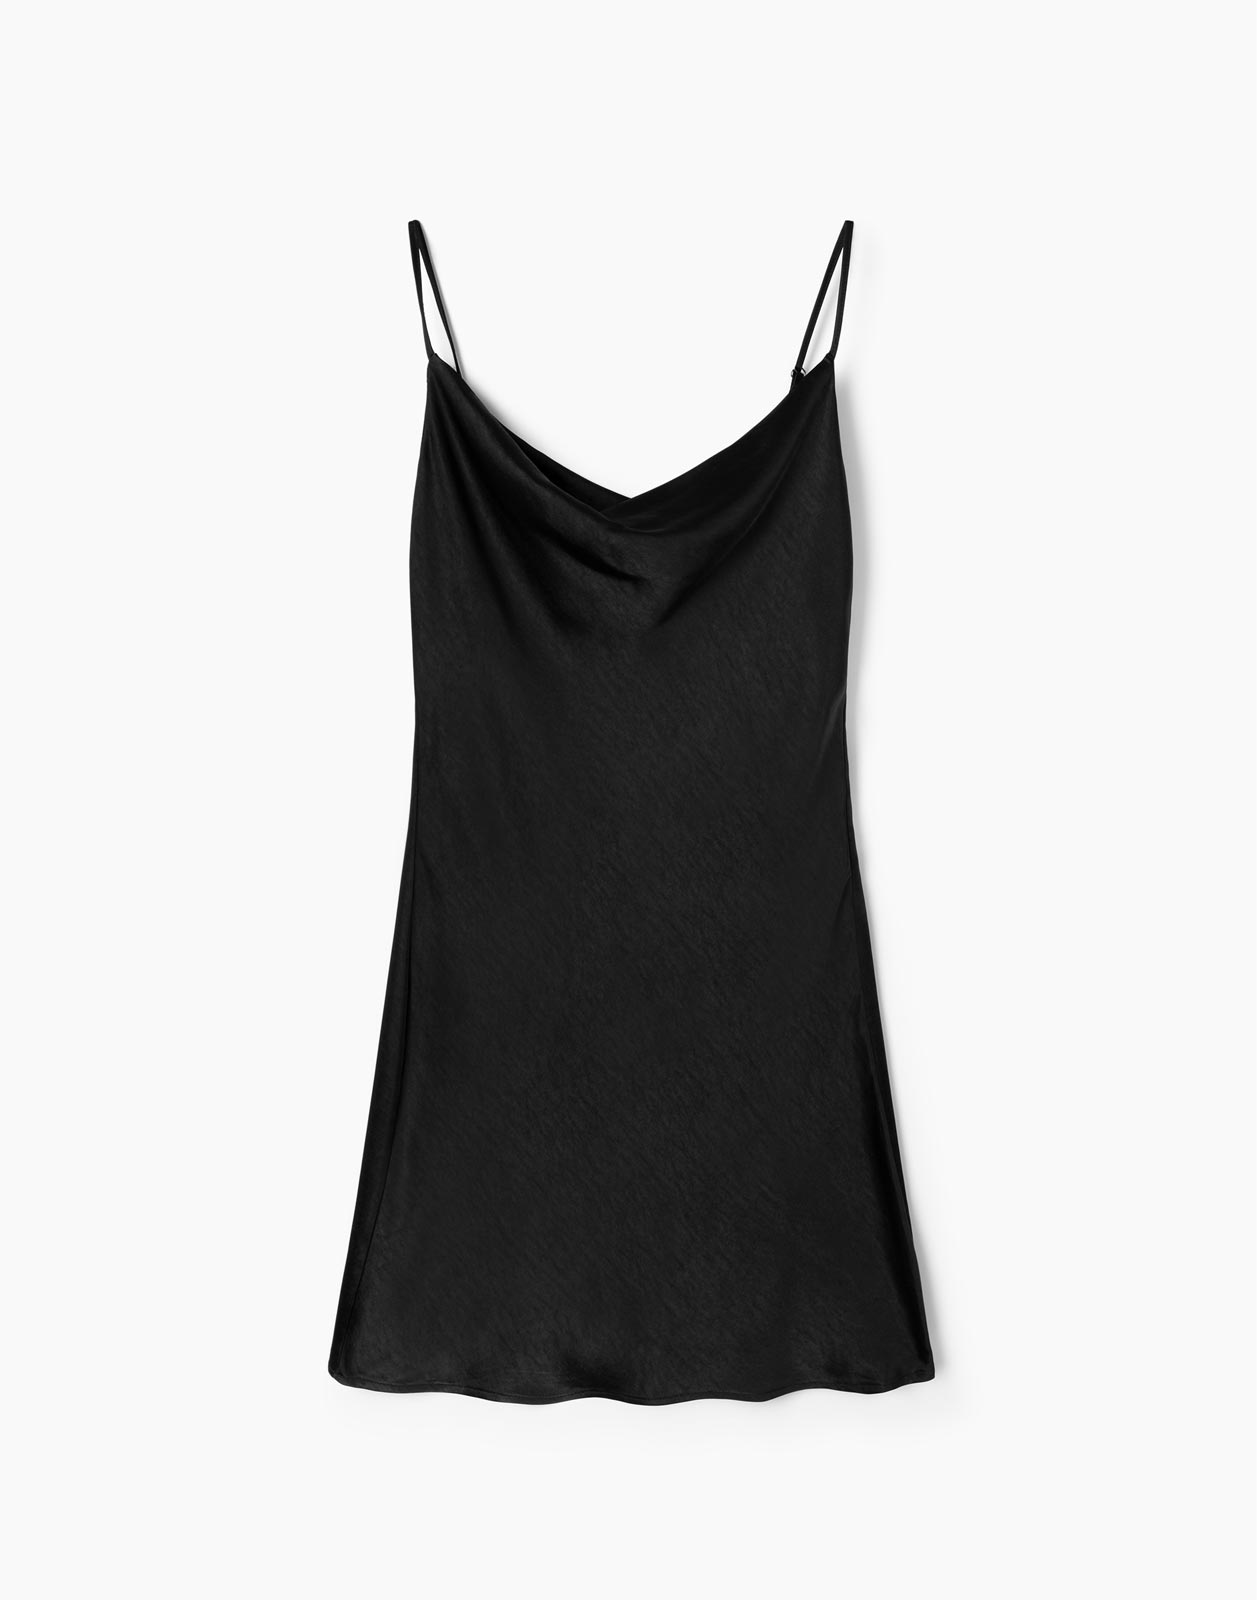 Платье женское Gloria Jeans GDR027373 черное L